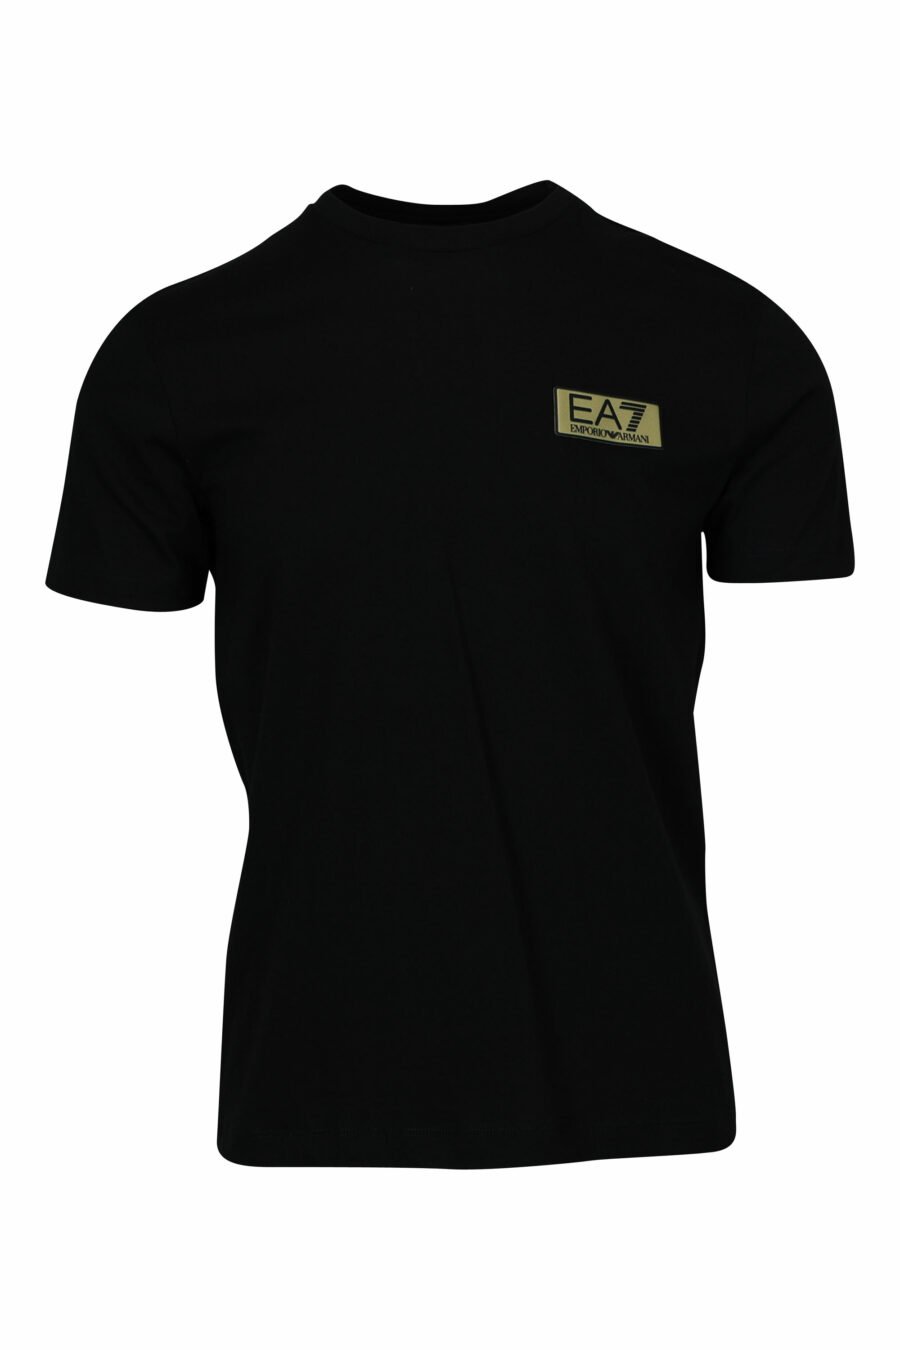 T-shirt noir avec minilogue "lux identity" noir sur plaque d'or - 8058947471980